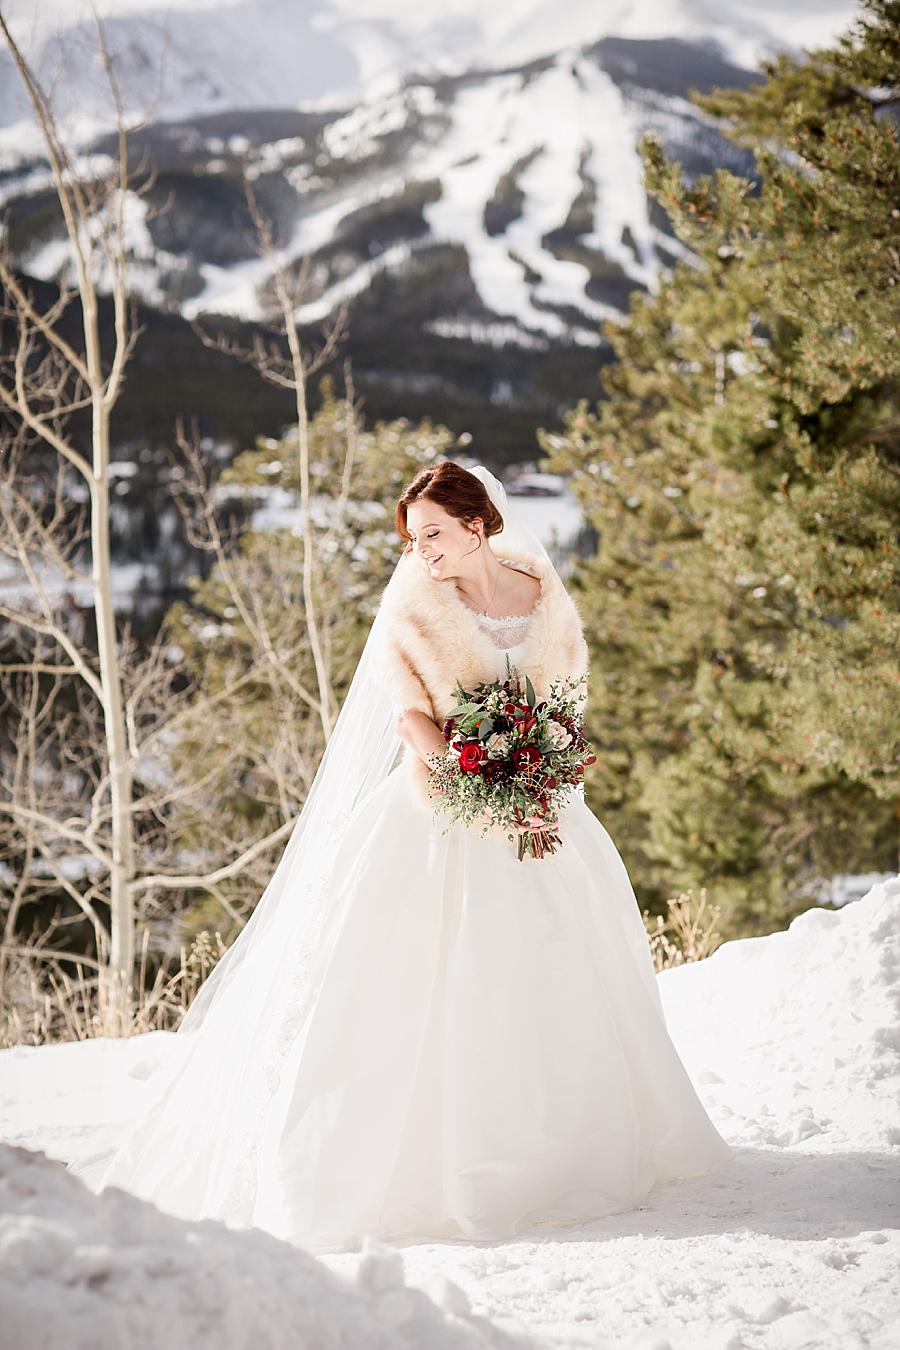 Mountain backdrop at this Colorado Destination Wedding by Knoxville Wedding Photographer, Amanda May Photos.